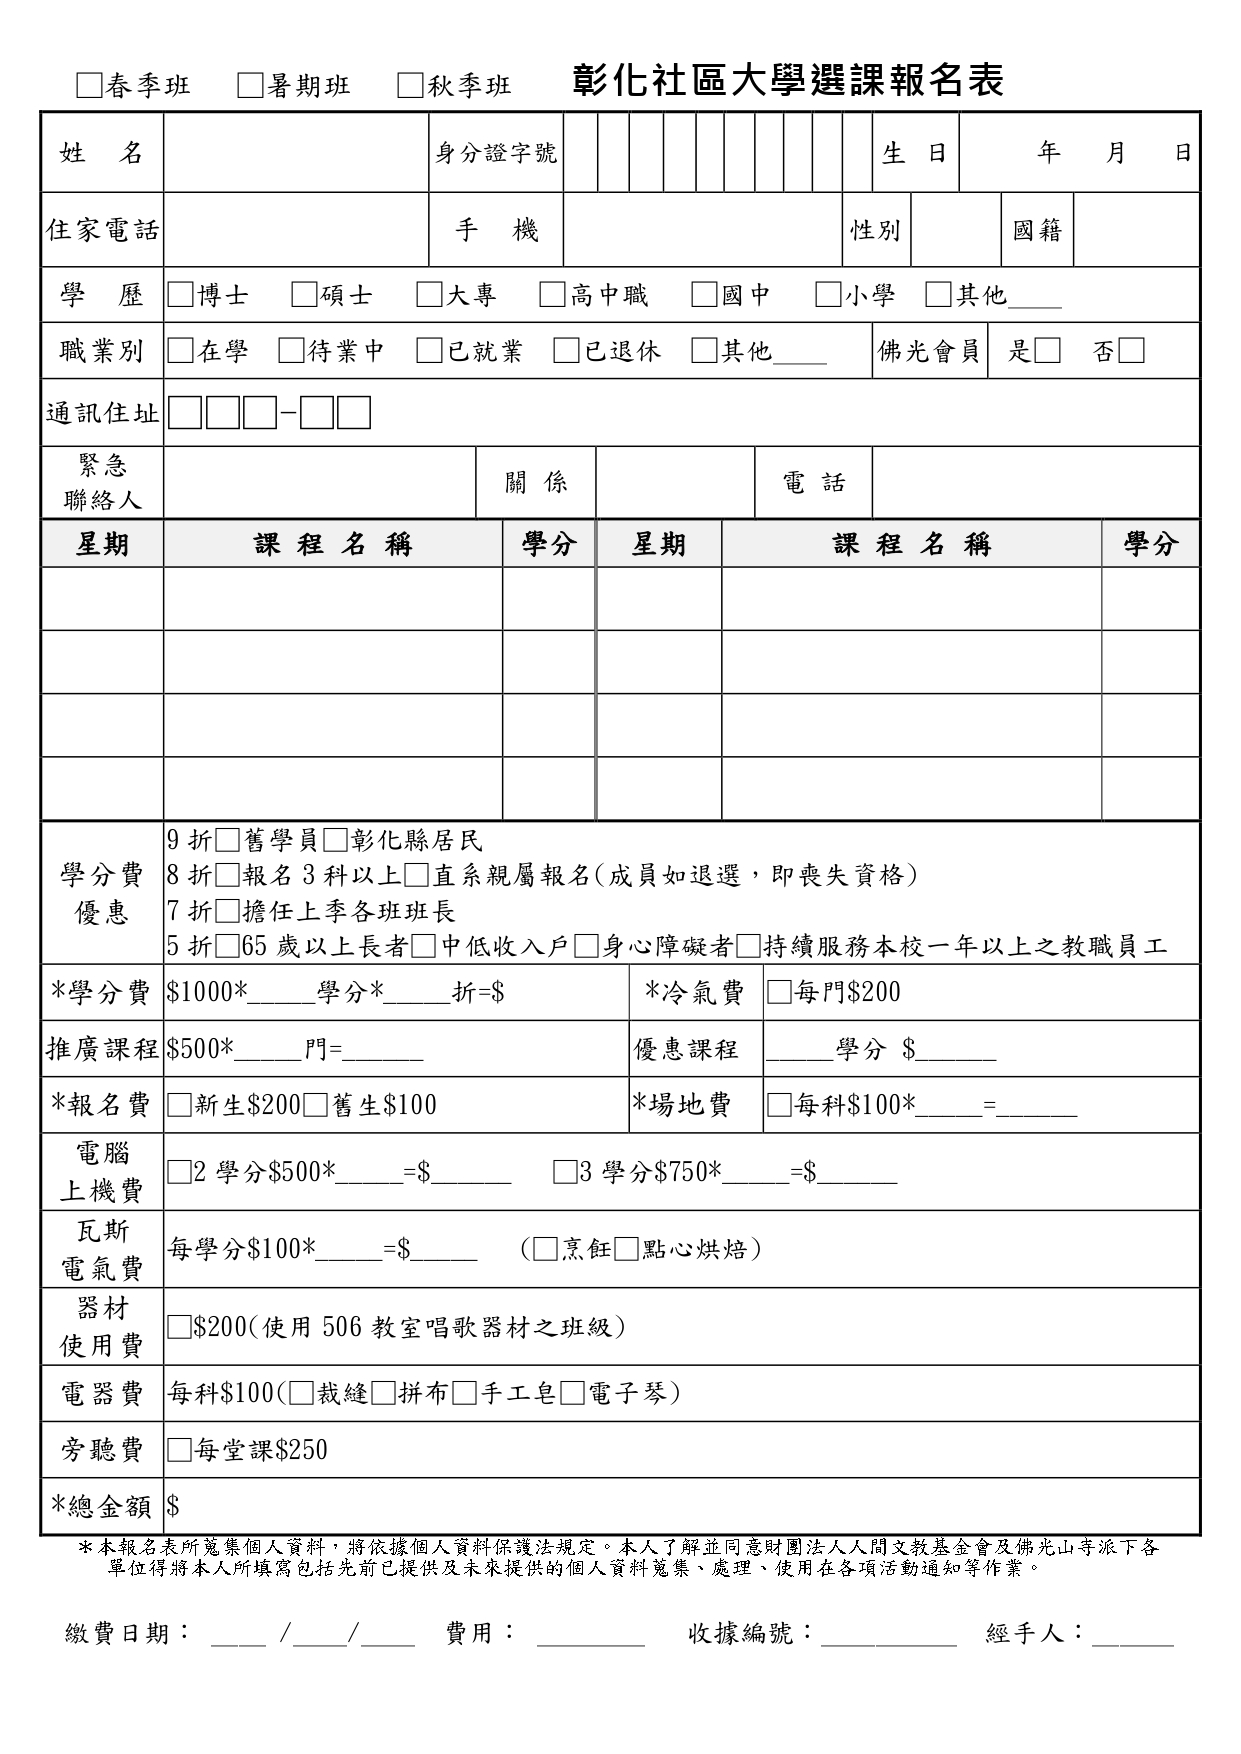 學員選課報名表(更新版10912).jpg